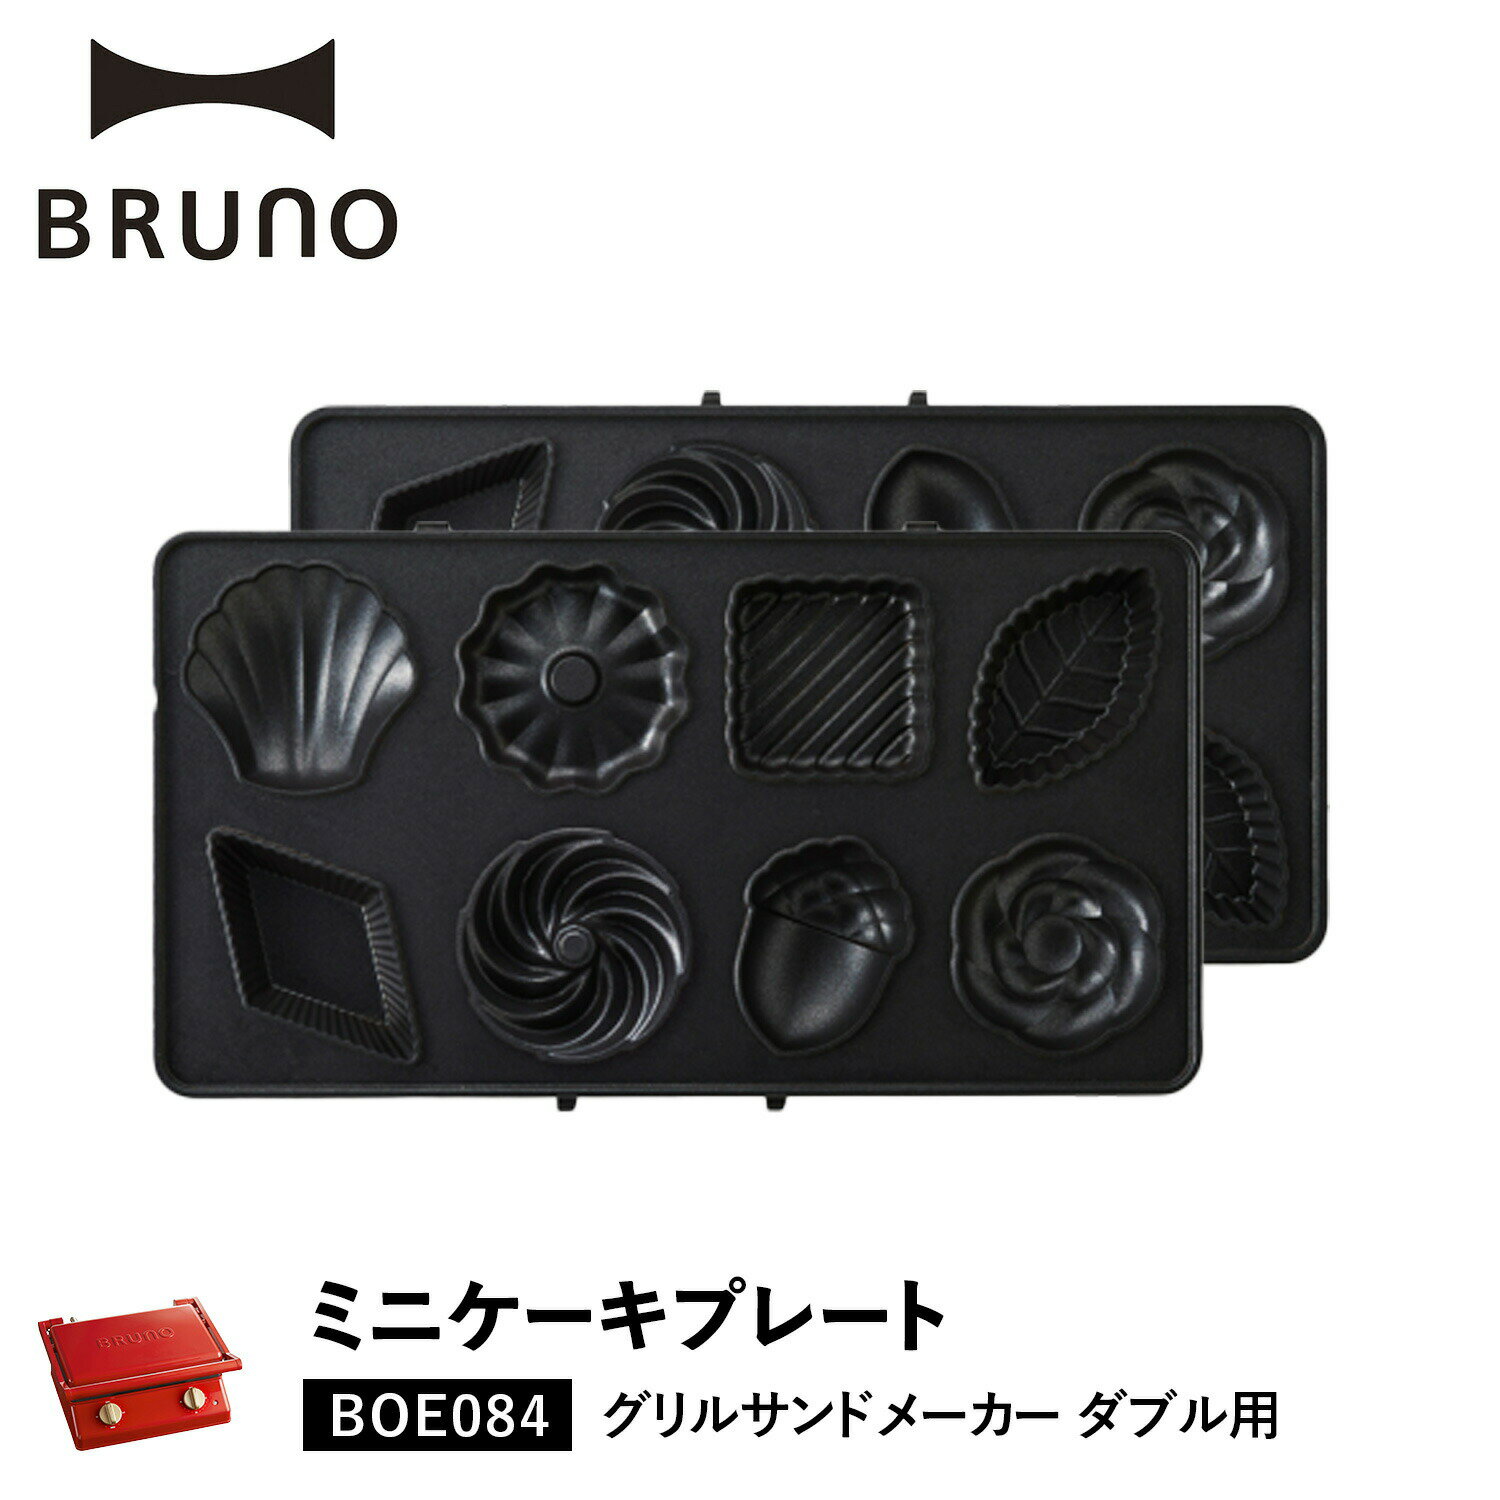 BRUNO BOE084-CAKE ブルーノ グリルサンドメーカー ダブル用 ミニケーキプレート オプション プレート 料理 パーティ キッチン